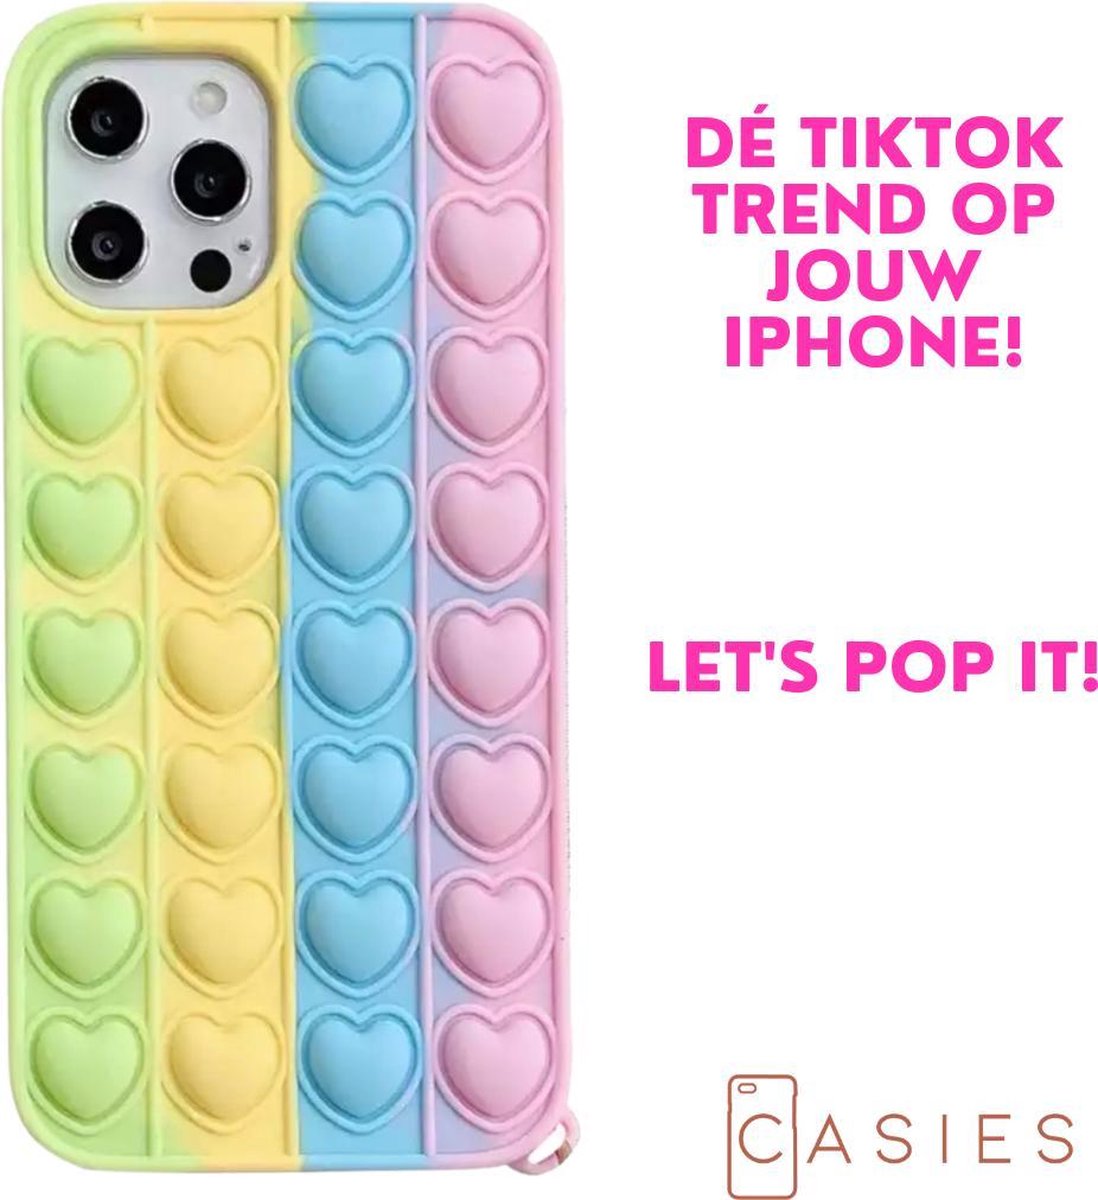 Casies Apple iPhone XR Pop It Fidget Toy telefoonhoesje - Rainbow Heart case - Gezien op TikTok - Soft case hoesje - Fidget Toys